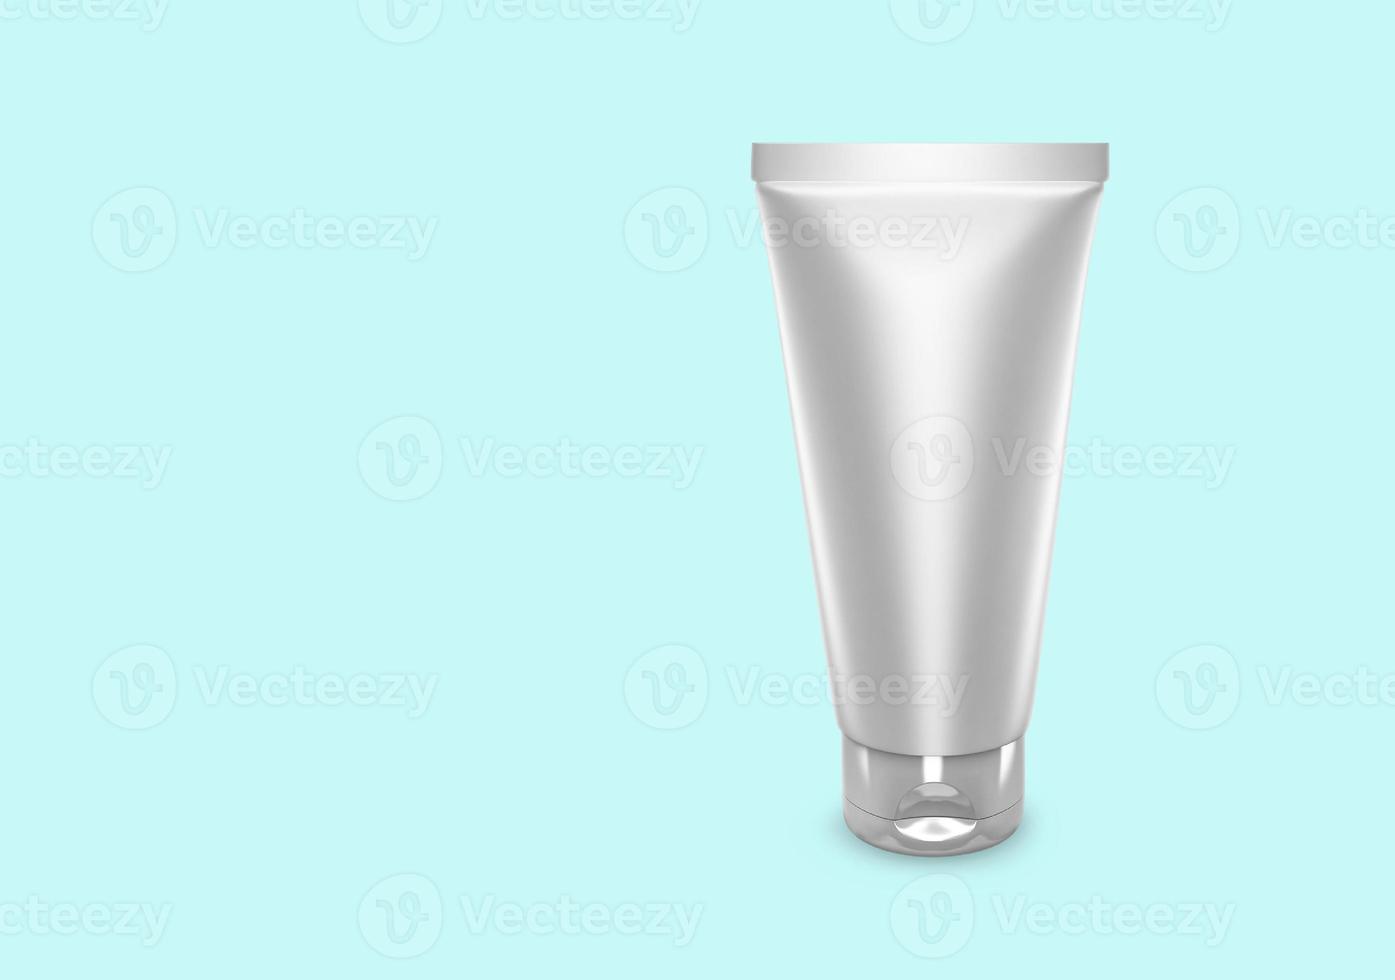 maquete do tubo de esfoliação branca prata isolada do design de pacote do tubo de esfoliação de fundo. modelo de higiene, médico, corporal ou facial em branco. Ilustração 3D foto